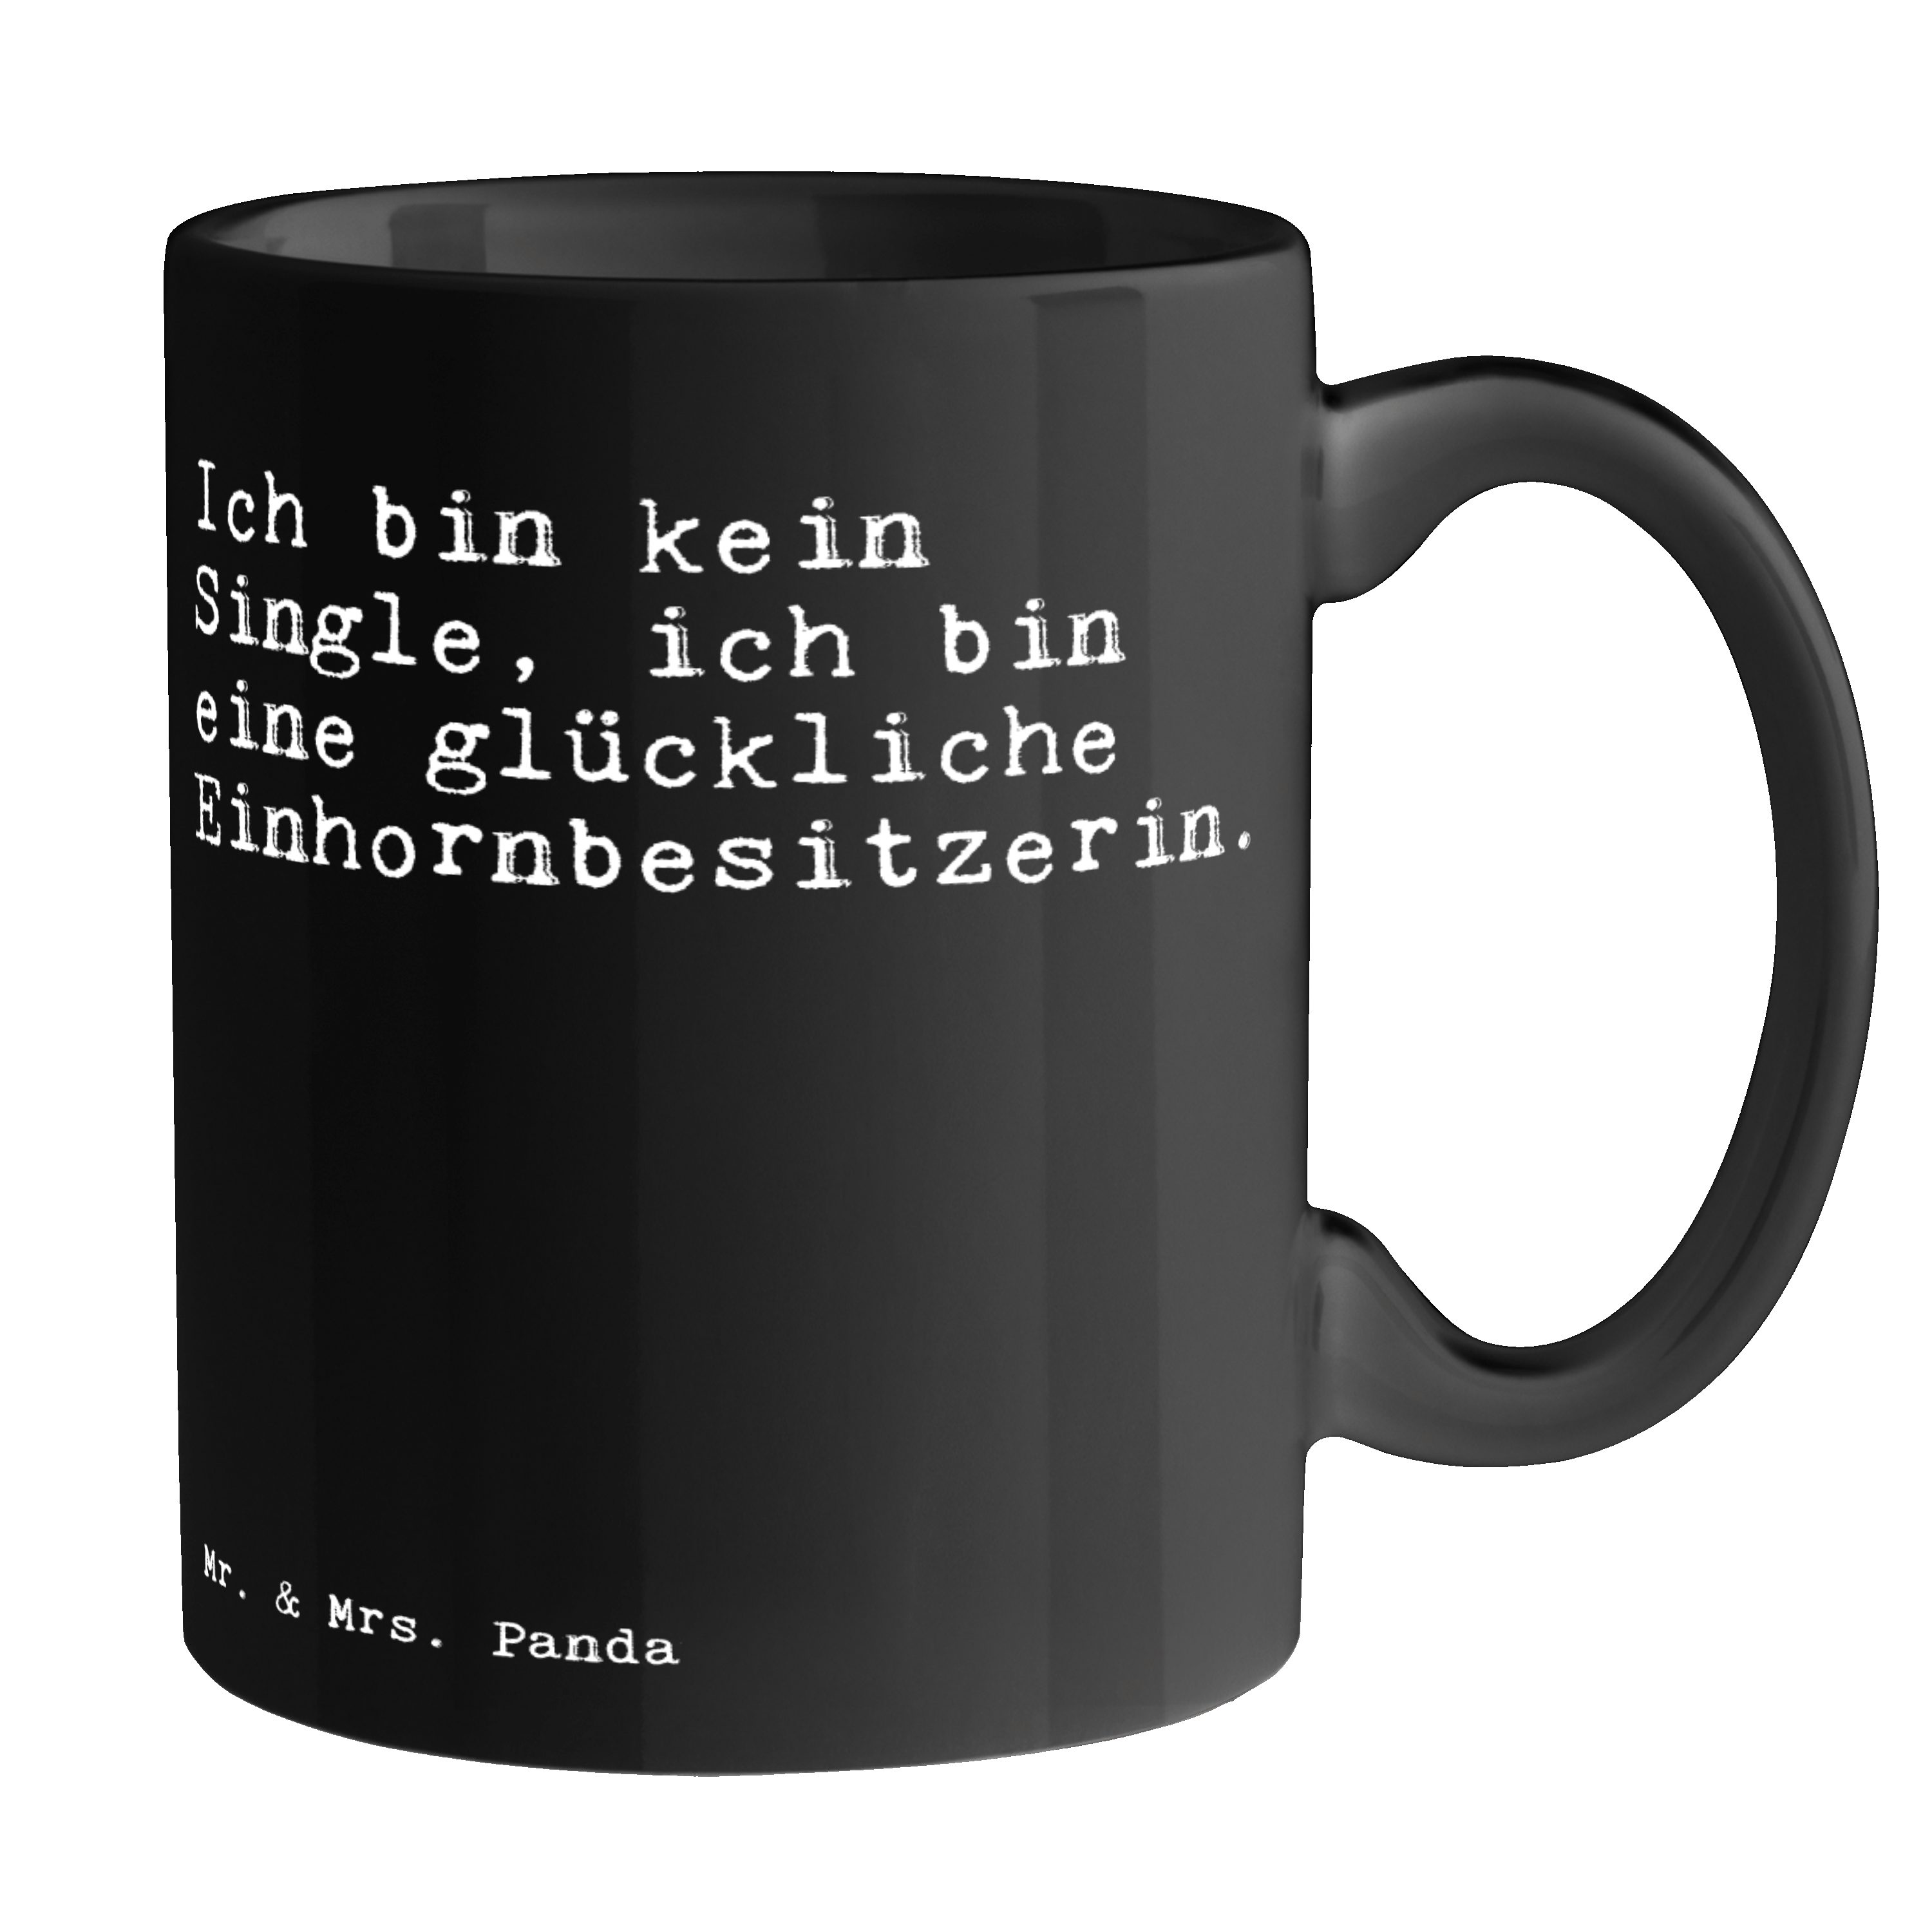 Mr. & Mrs. Panda Tasse Ich bin kein Single,... - Schwarz - Geschenk, Weisheiten, Spruch, Bec, Keramik Schwarz